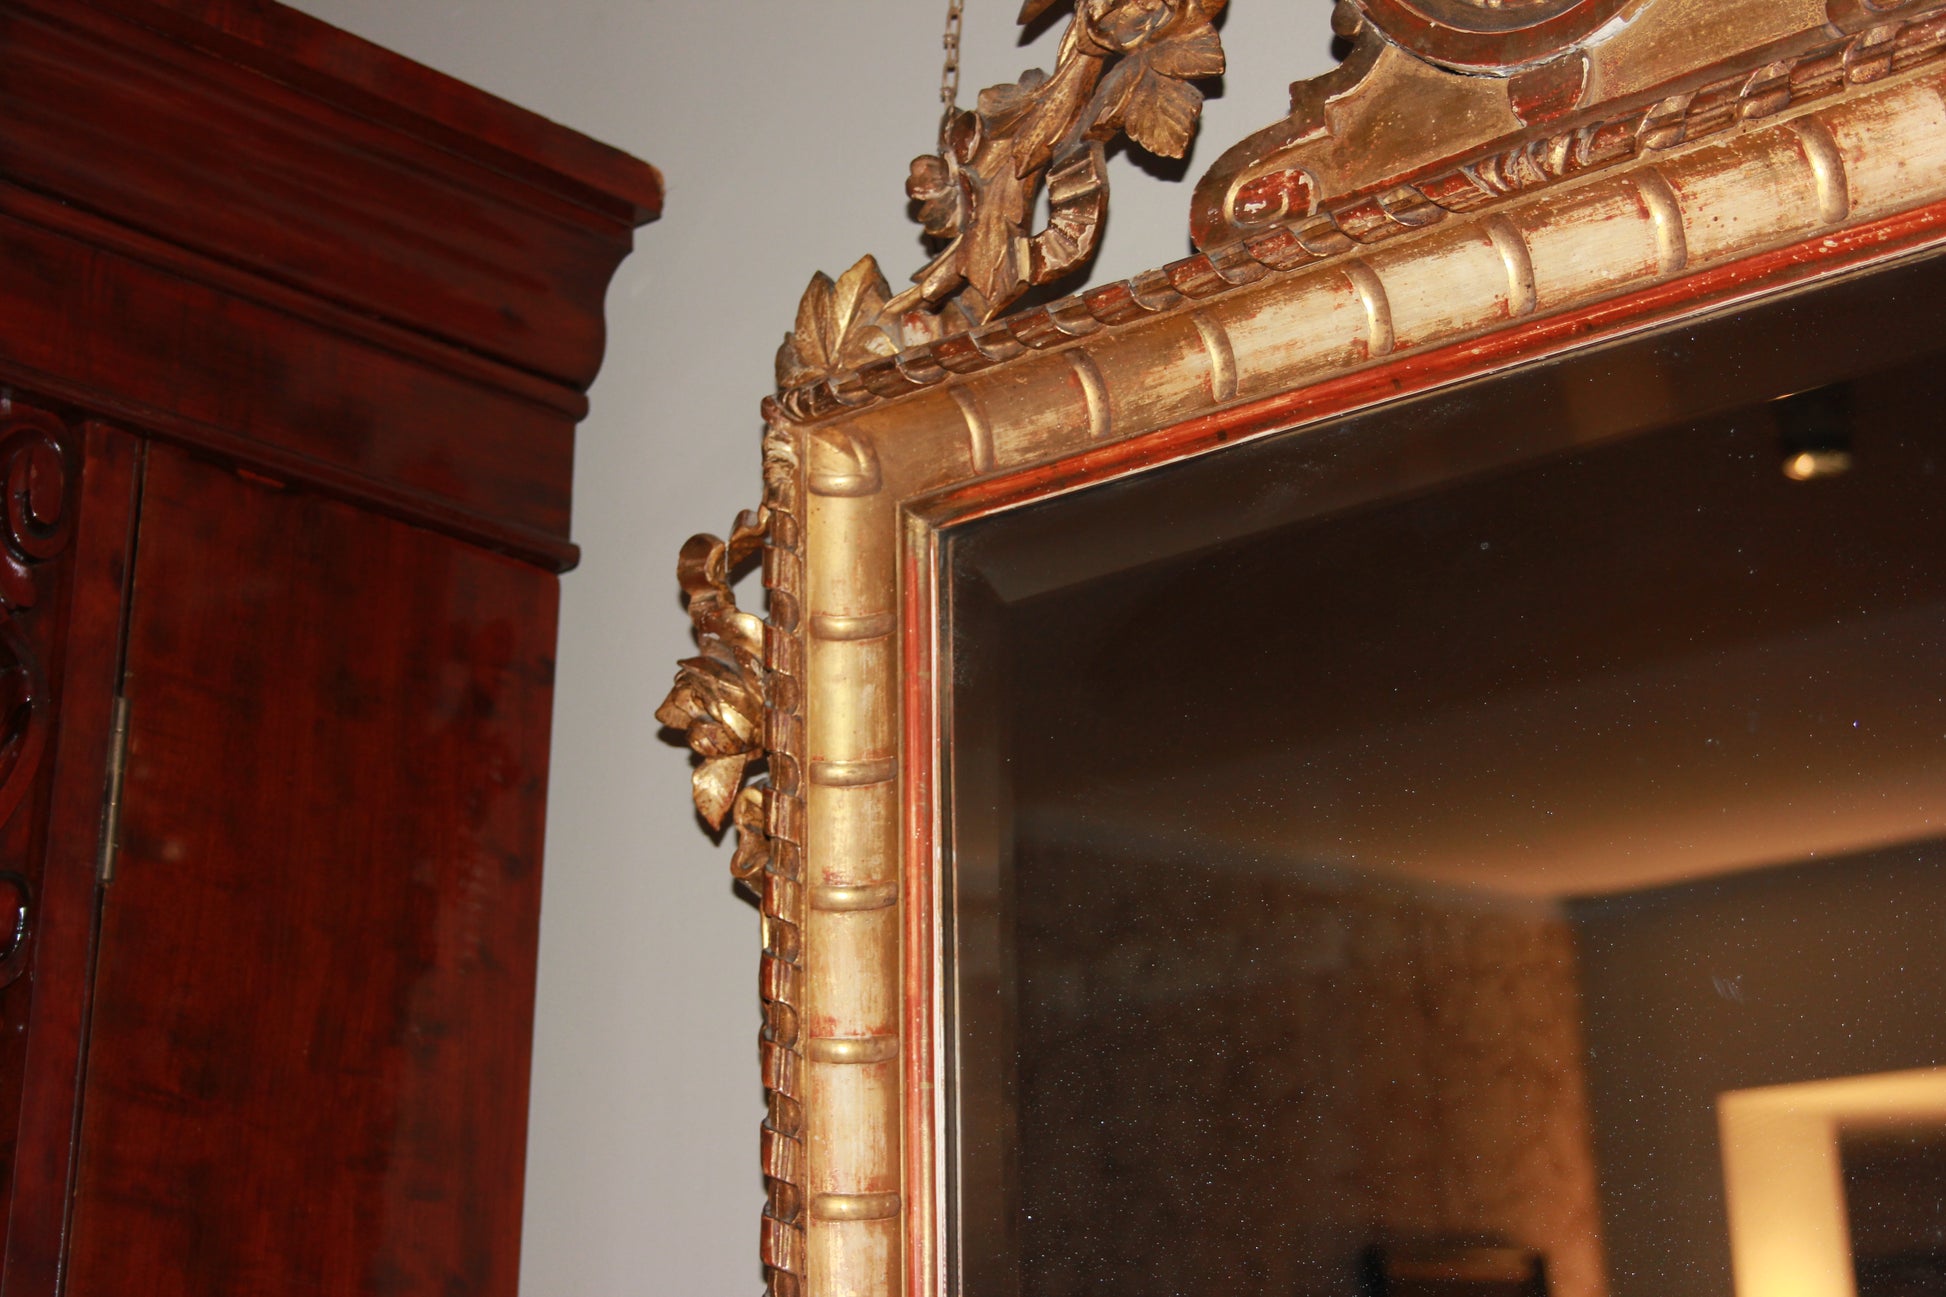 Magnifica specchiera francese della prima metà del 1800 dorata foglia oro con ricchi fregi